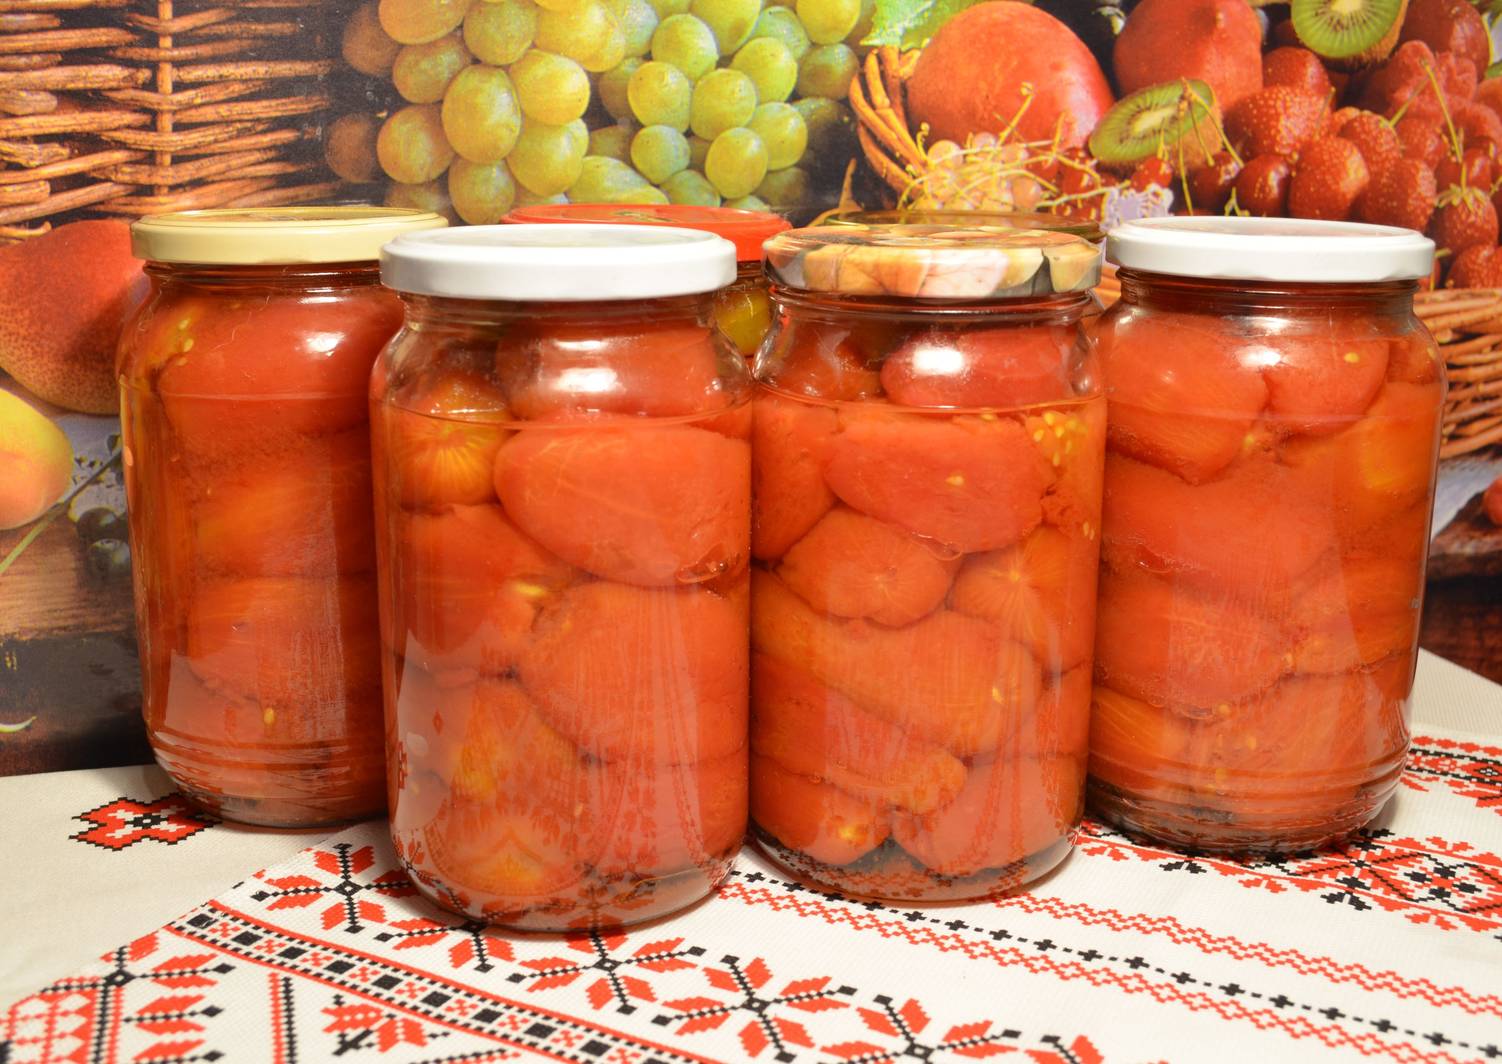 Как приготовить маринованные помидоры без шкурки на зиму, рецепты быстрого посола